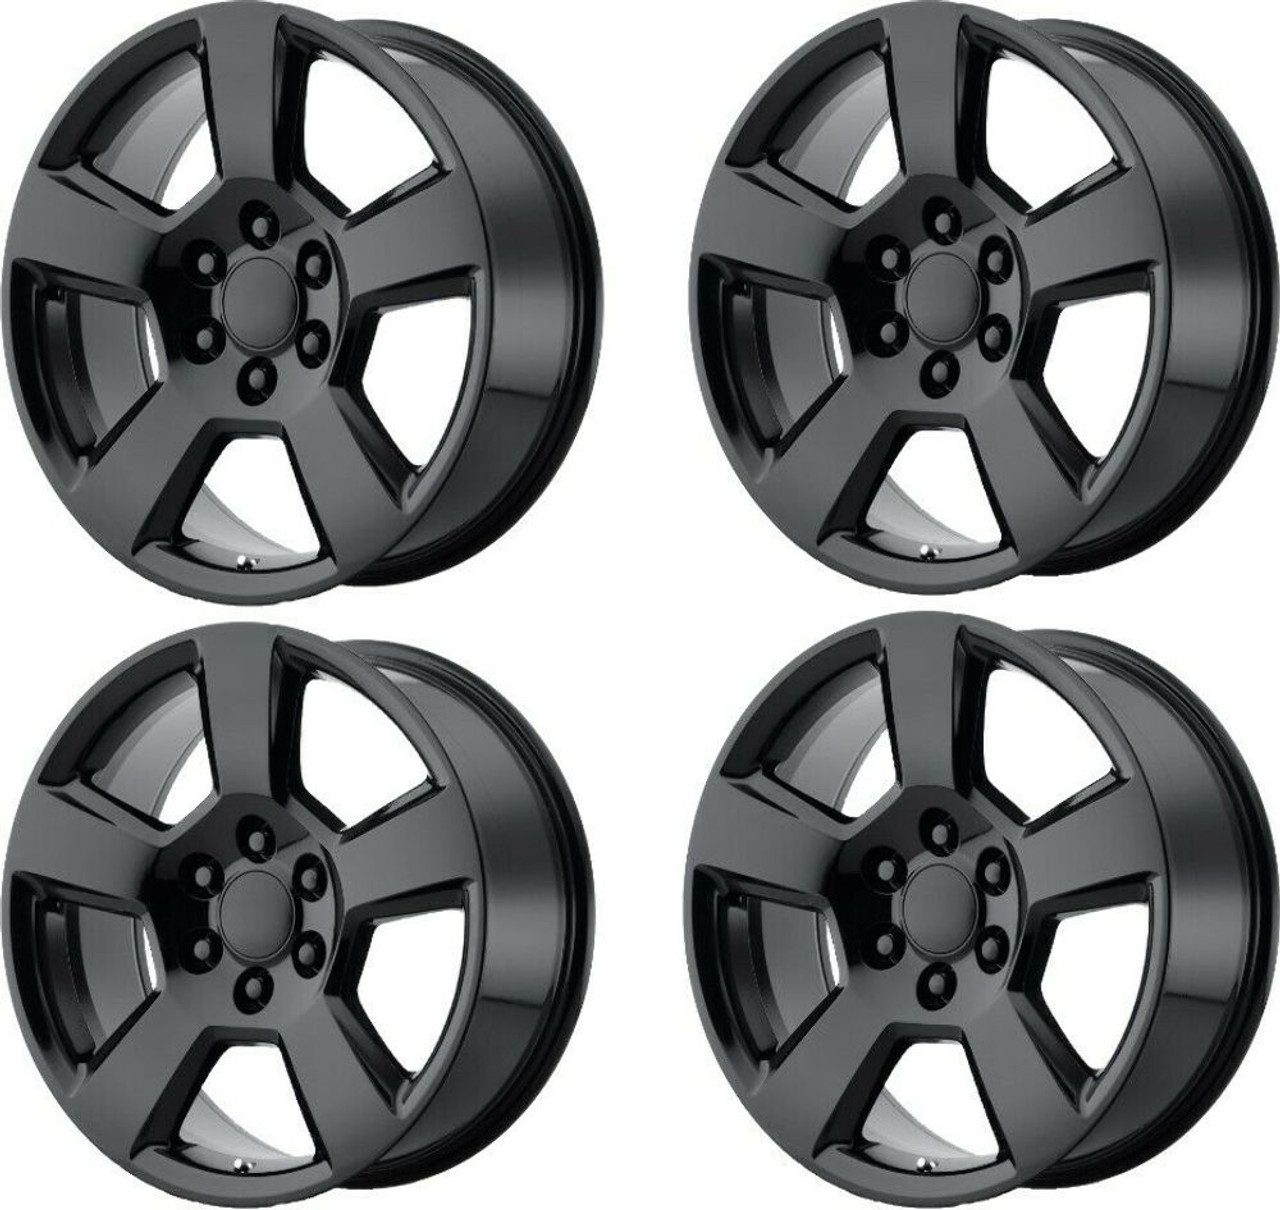 Set 4 Performance Replicas PR183 20x9 6x5.5 Gloss Black Wheels 20" 27mm Rims